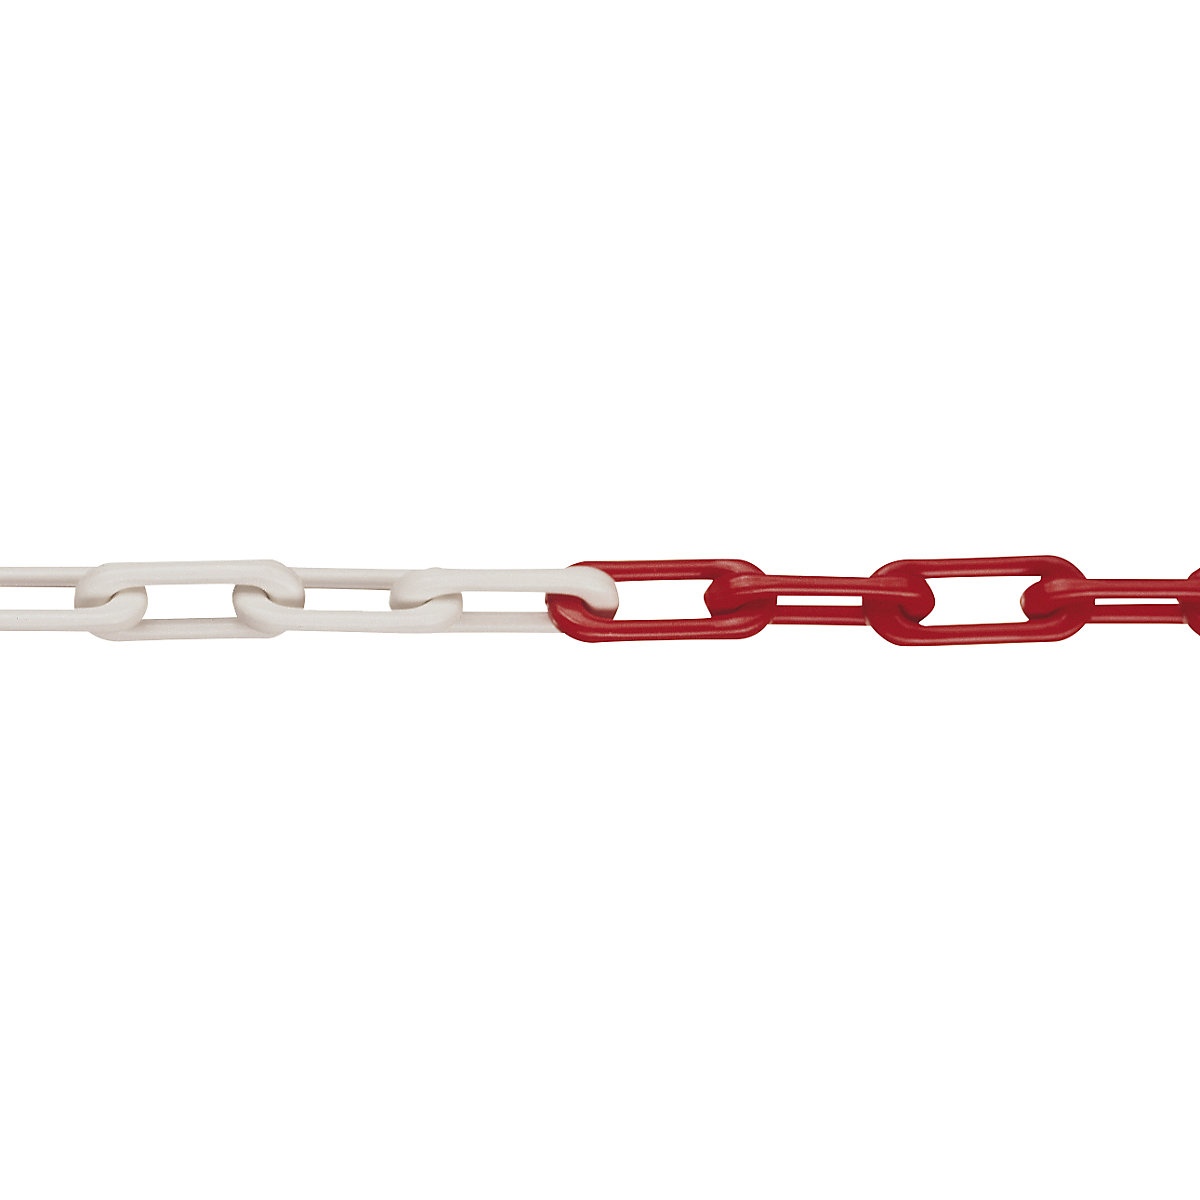 Cadena de calidad de nailon, calidad MNK 6, longitud de la unión 50 m, rojo-blanco, a partir de 4 unidades-6